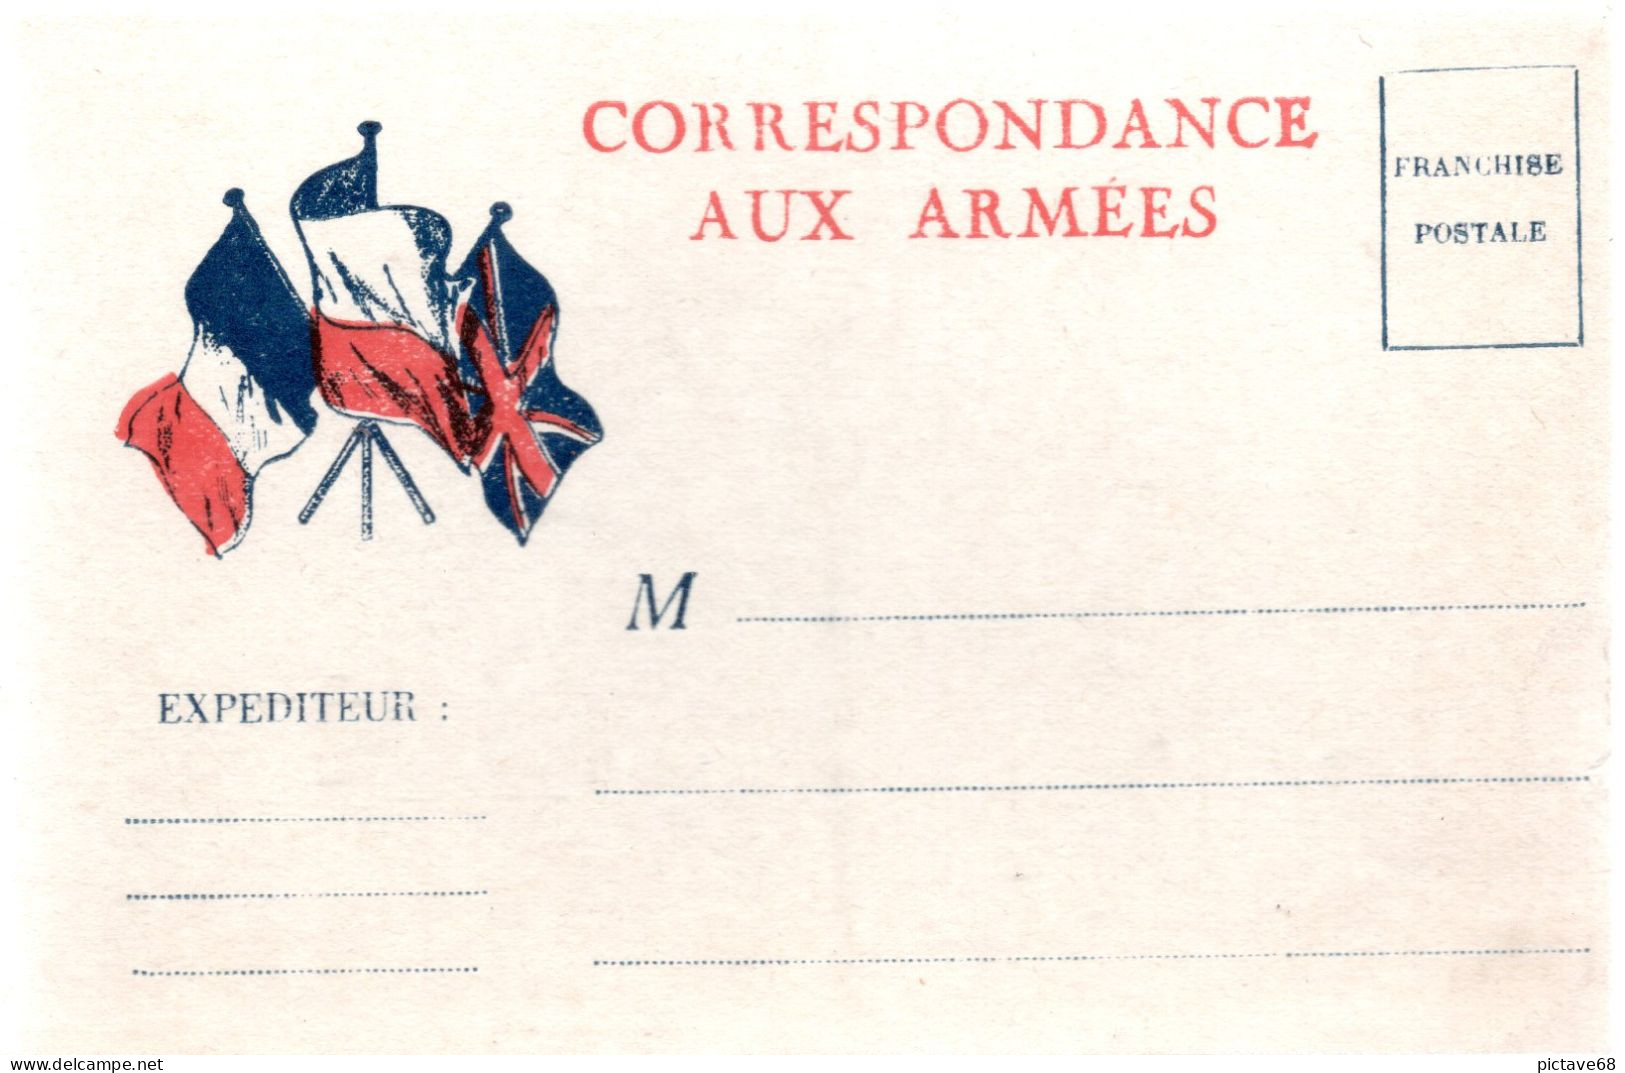 FRANCE / ENTIER POSTAL / CARTE CORRESPONDANCE AUX ARMEES NEUVE - Cartes-lettres